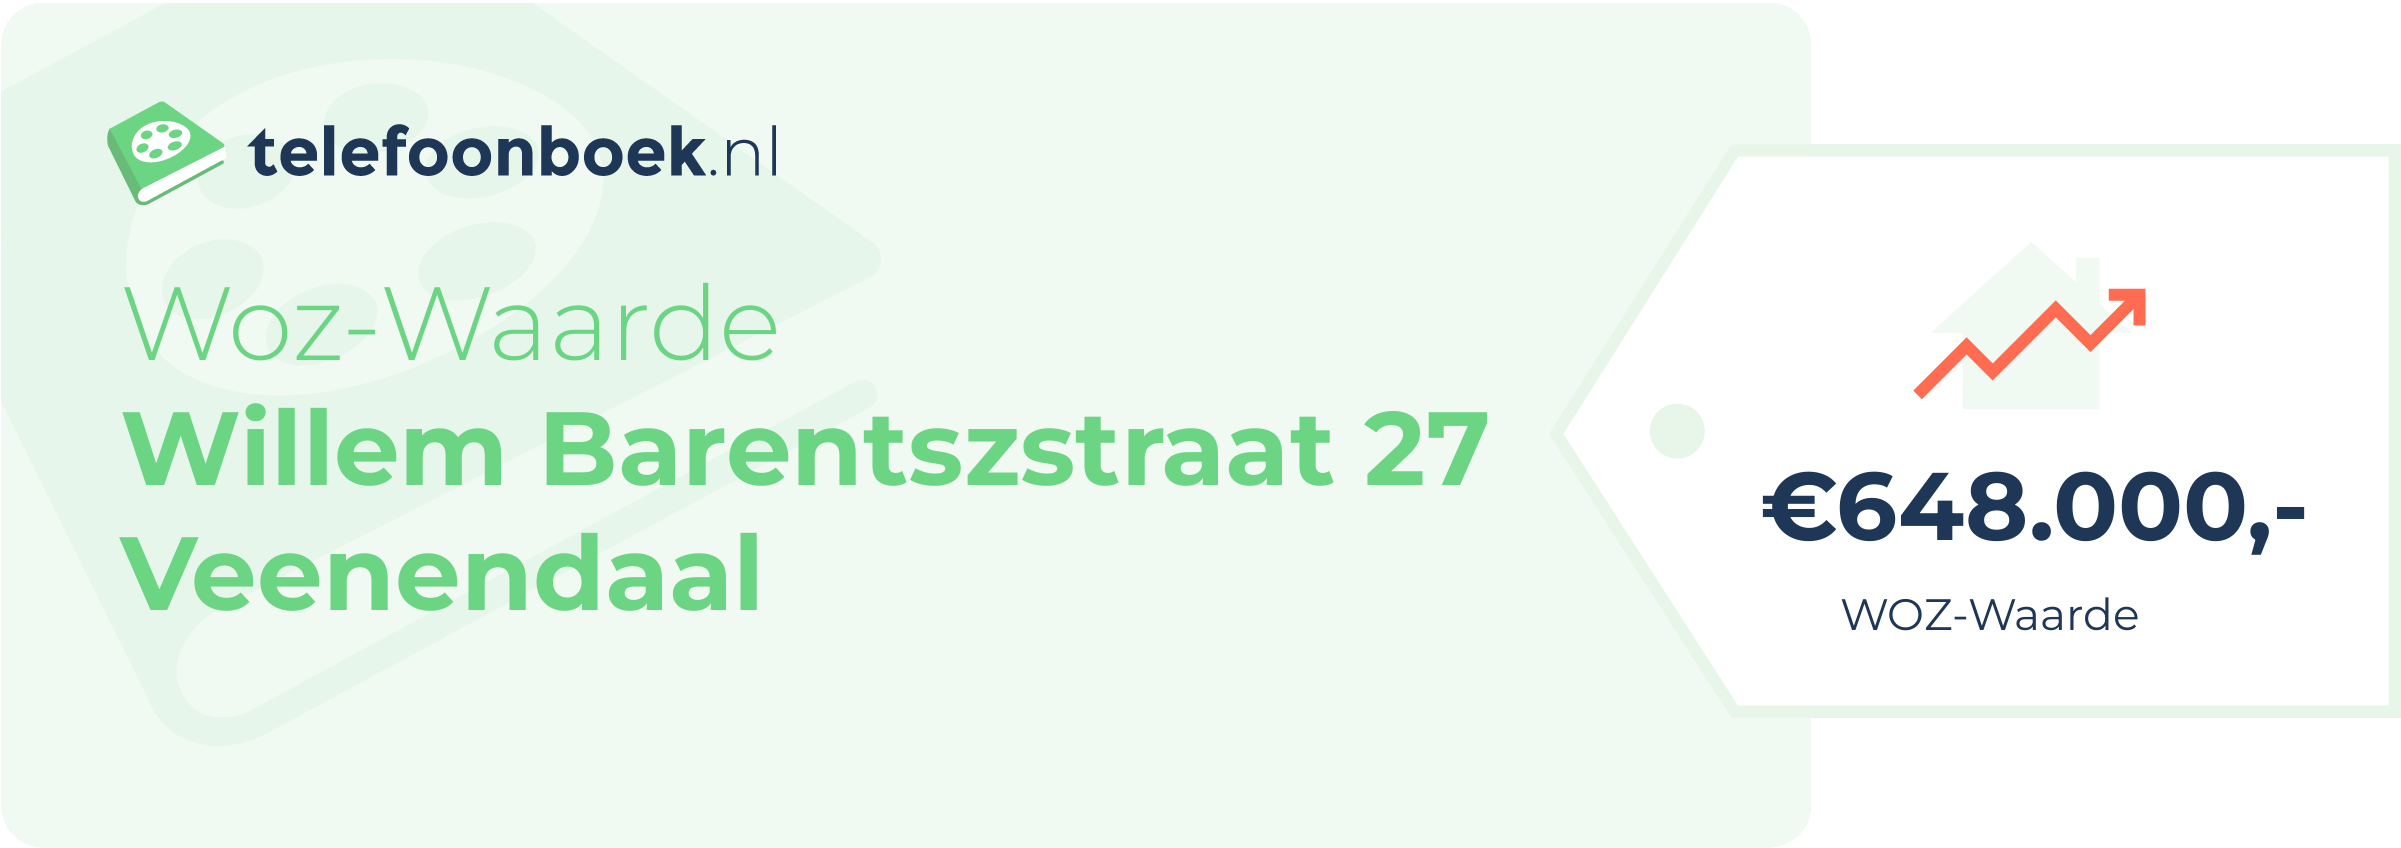 WOZ-waarde Willem Barentszstraat 27 Veenendaal